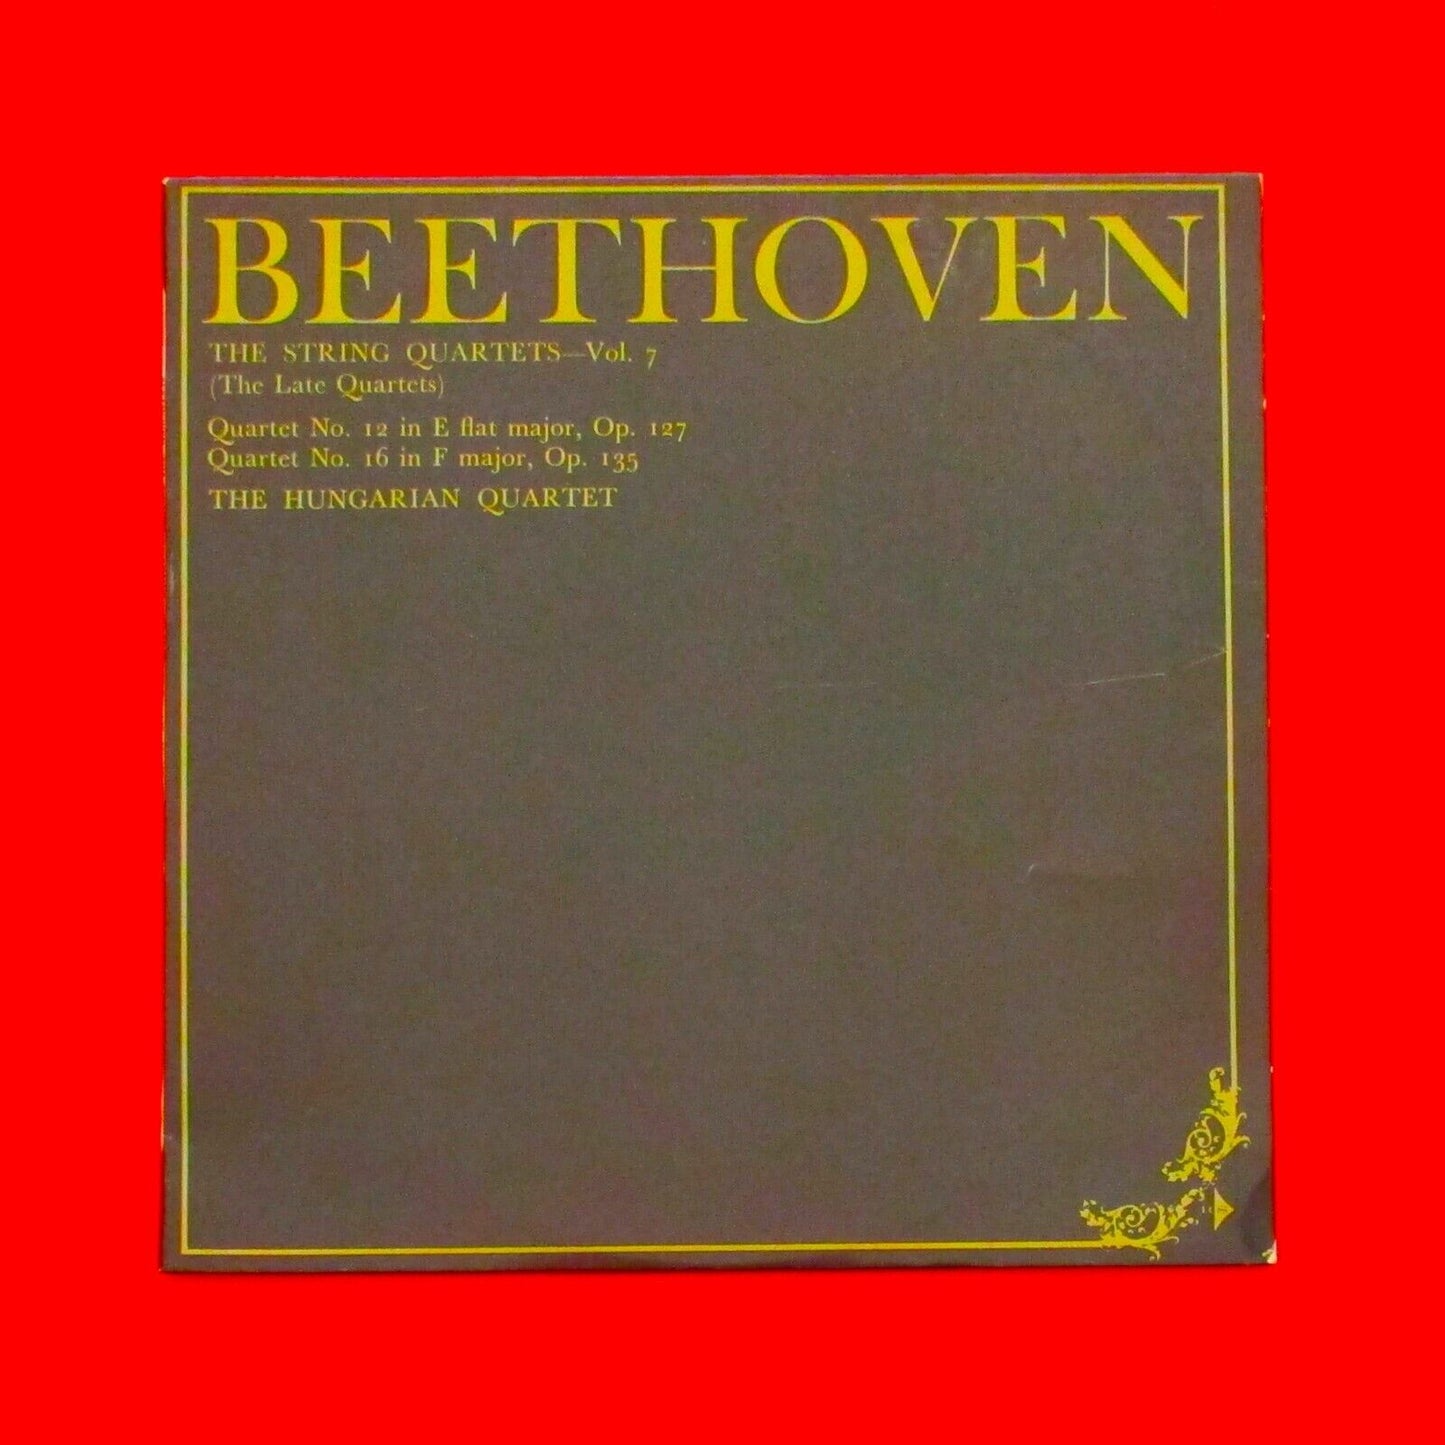 Beethoven The String Quartets, Vol. 7 Vinyl Album LP 1969 Australian Press